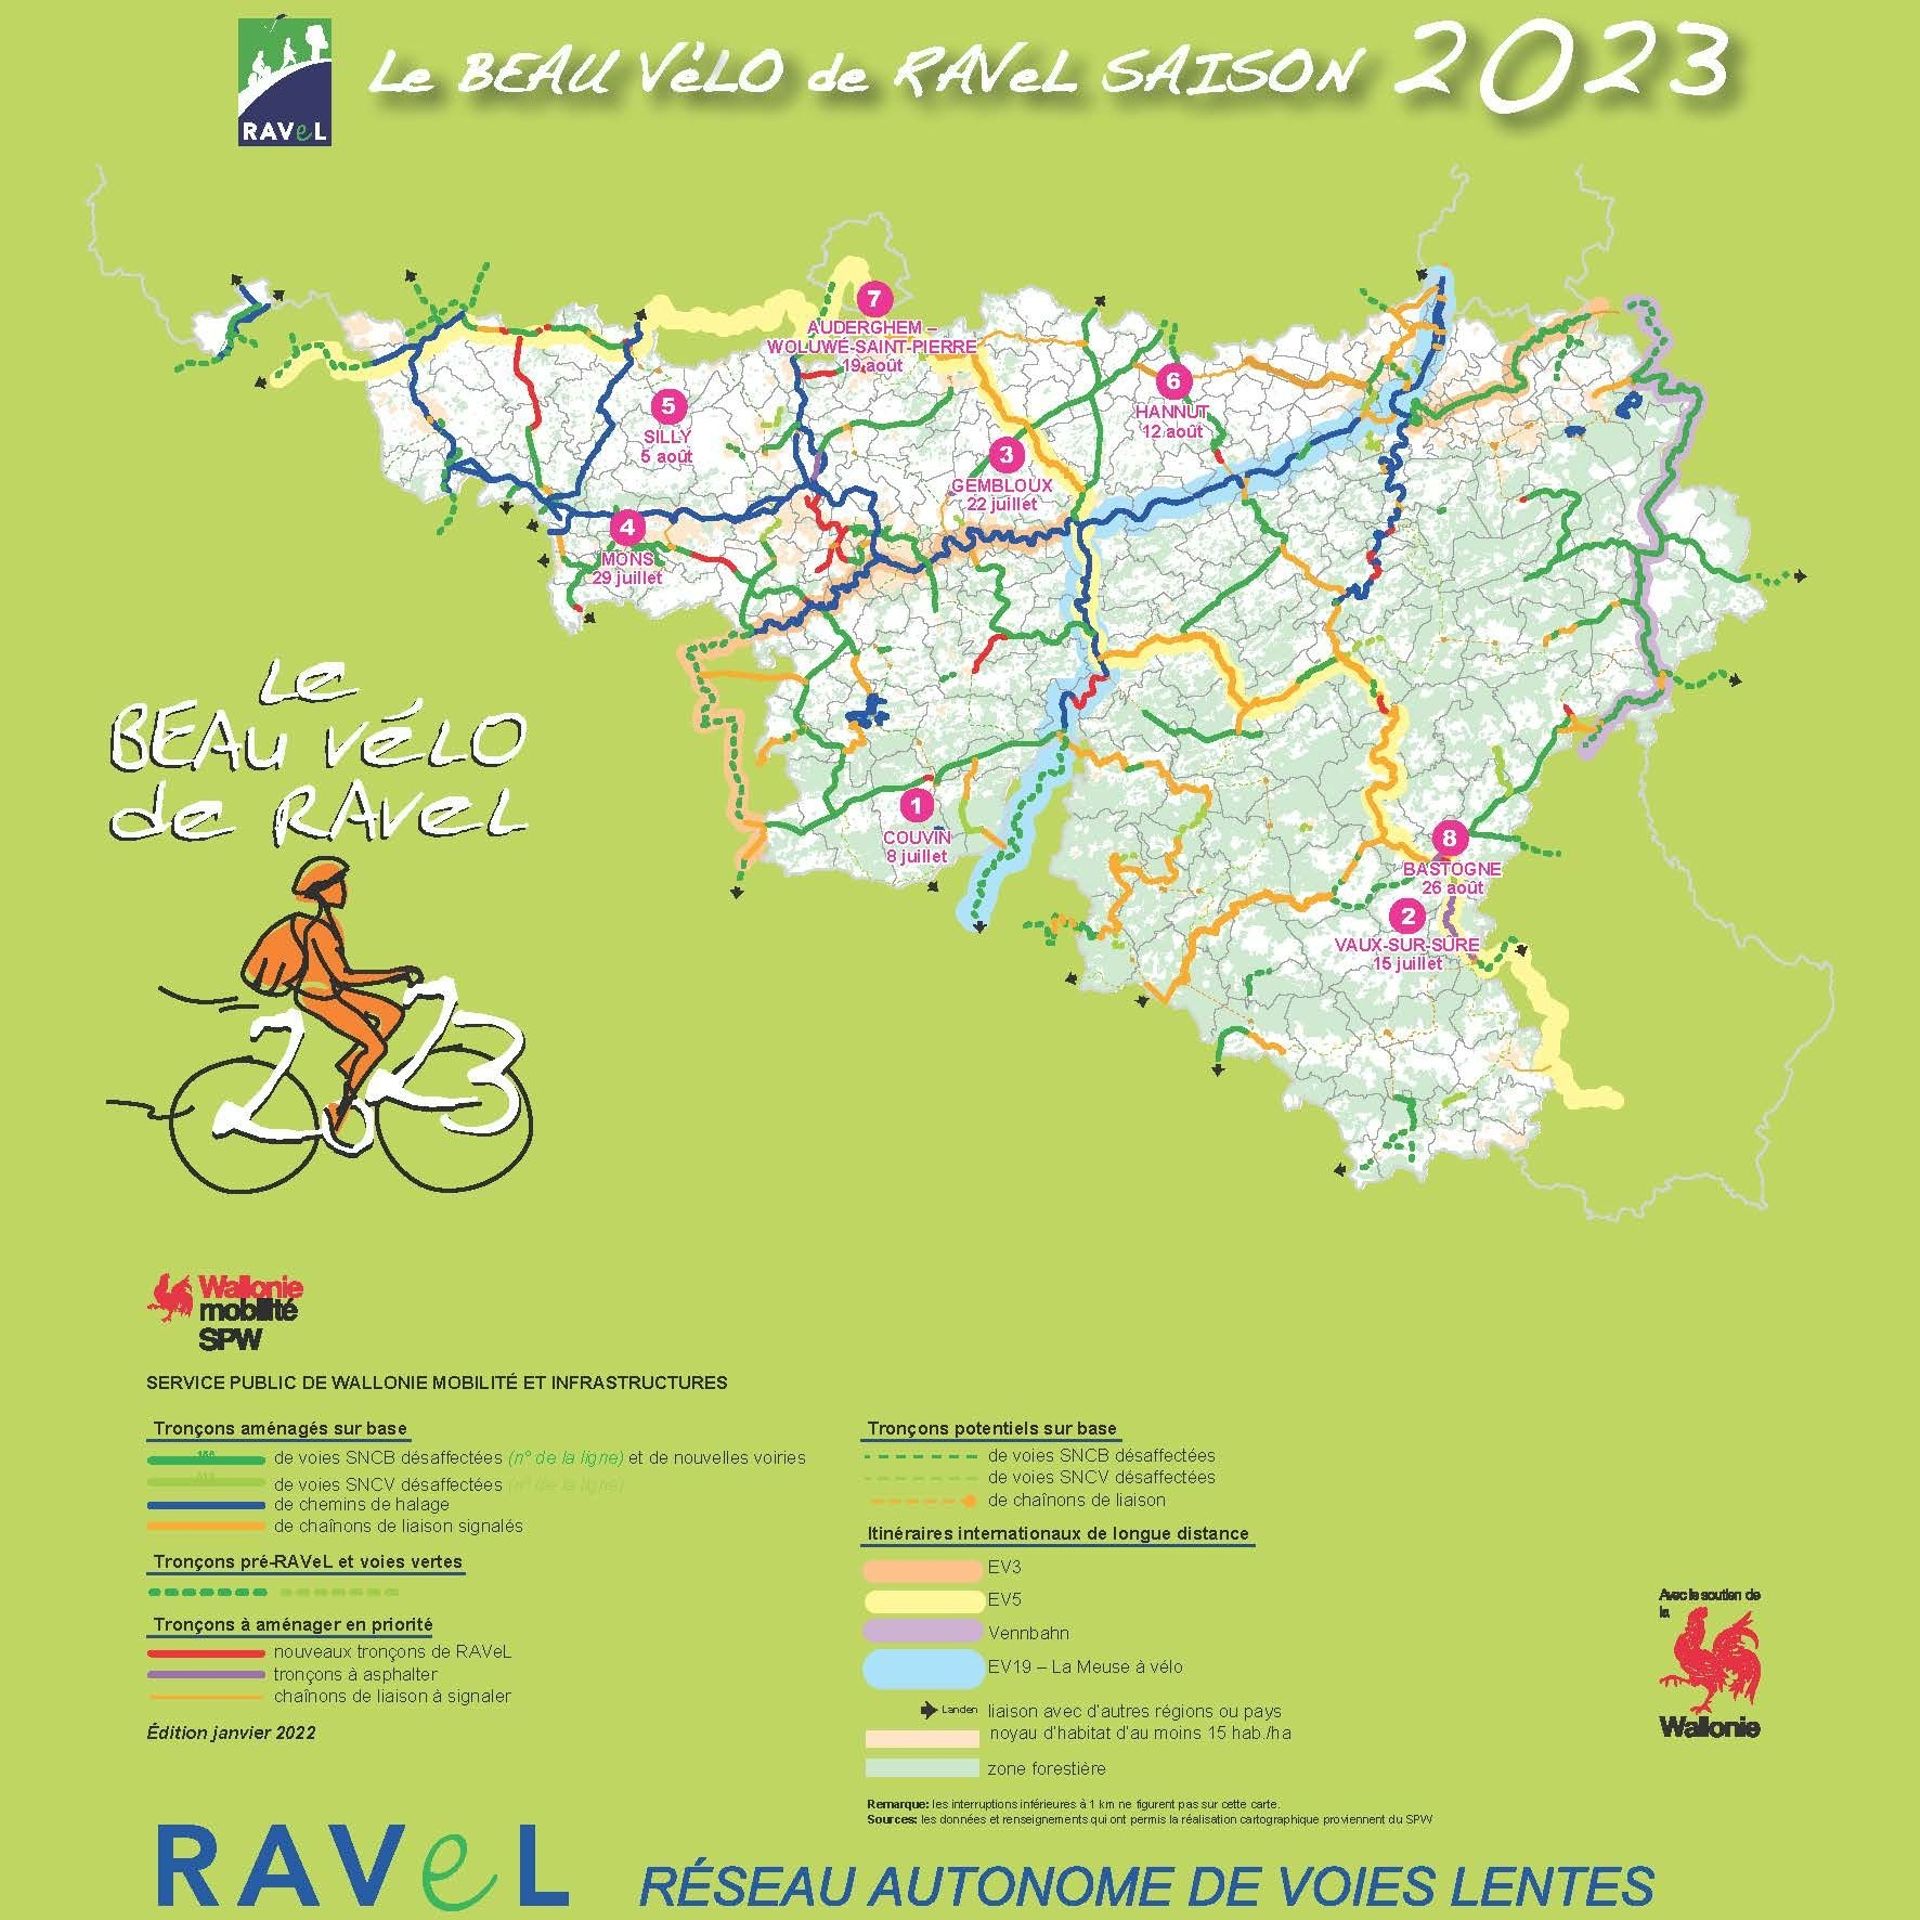 Découvrez la première étape du Beau Vélo de RAVeL en 2023 